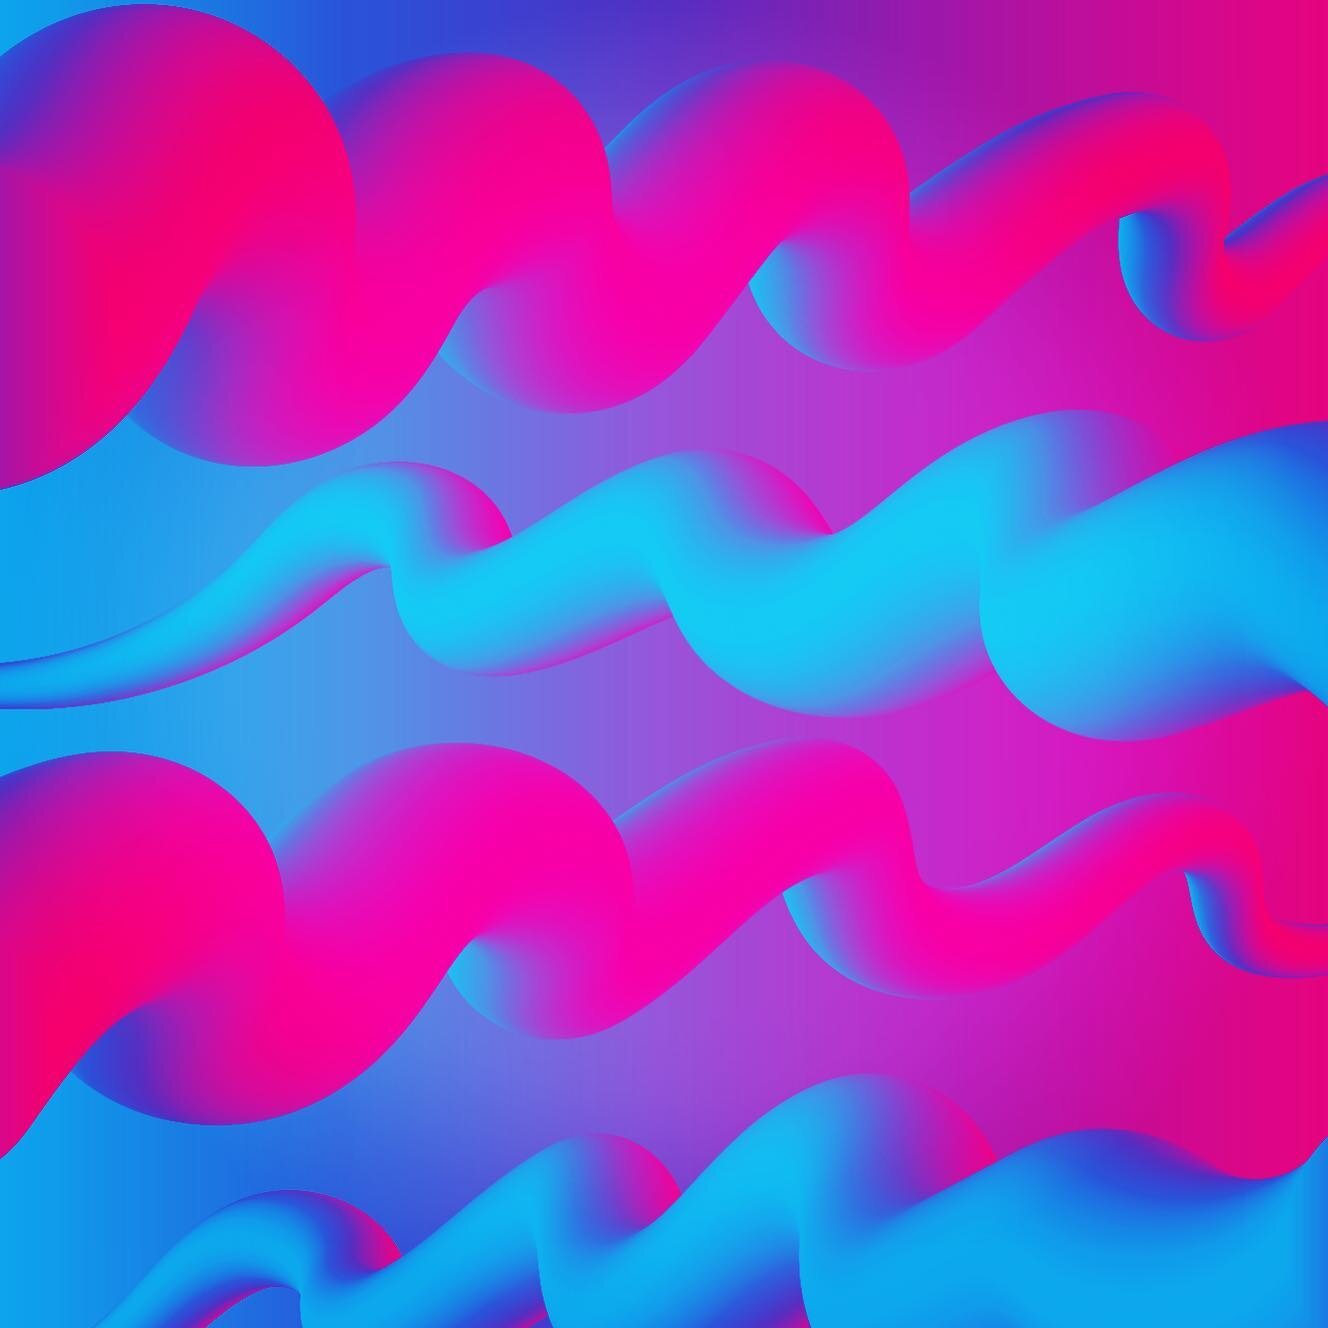 Blending some waves in #illustrator. 🌊 🌊 🌊
&mdash;&mdash;&mdash;&mdash;&mdash;&mdash;
#blendtool
#adobeillustrator
#thesurferisnotthewave
#meaningwave
#gradients 
#gavitdesign
#aviation